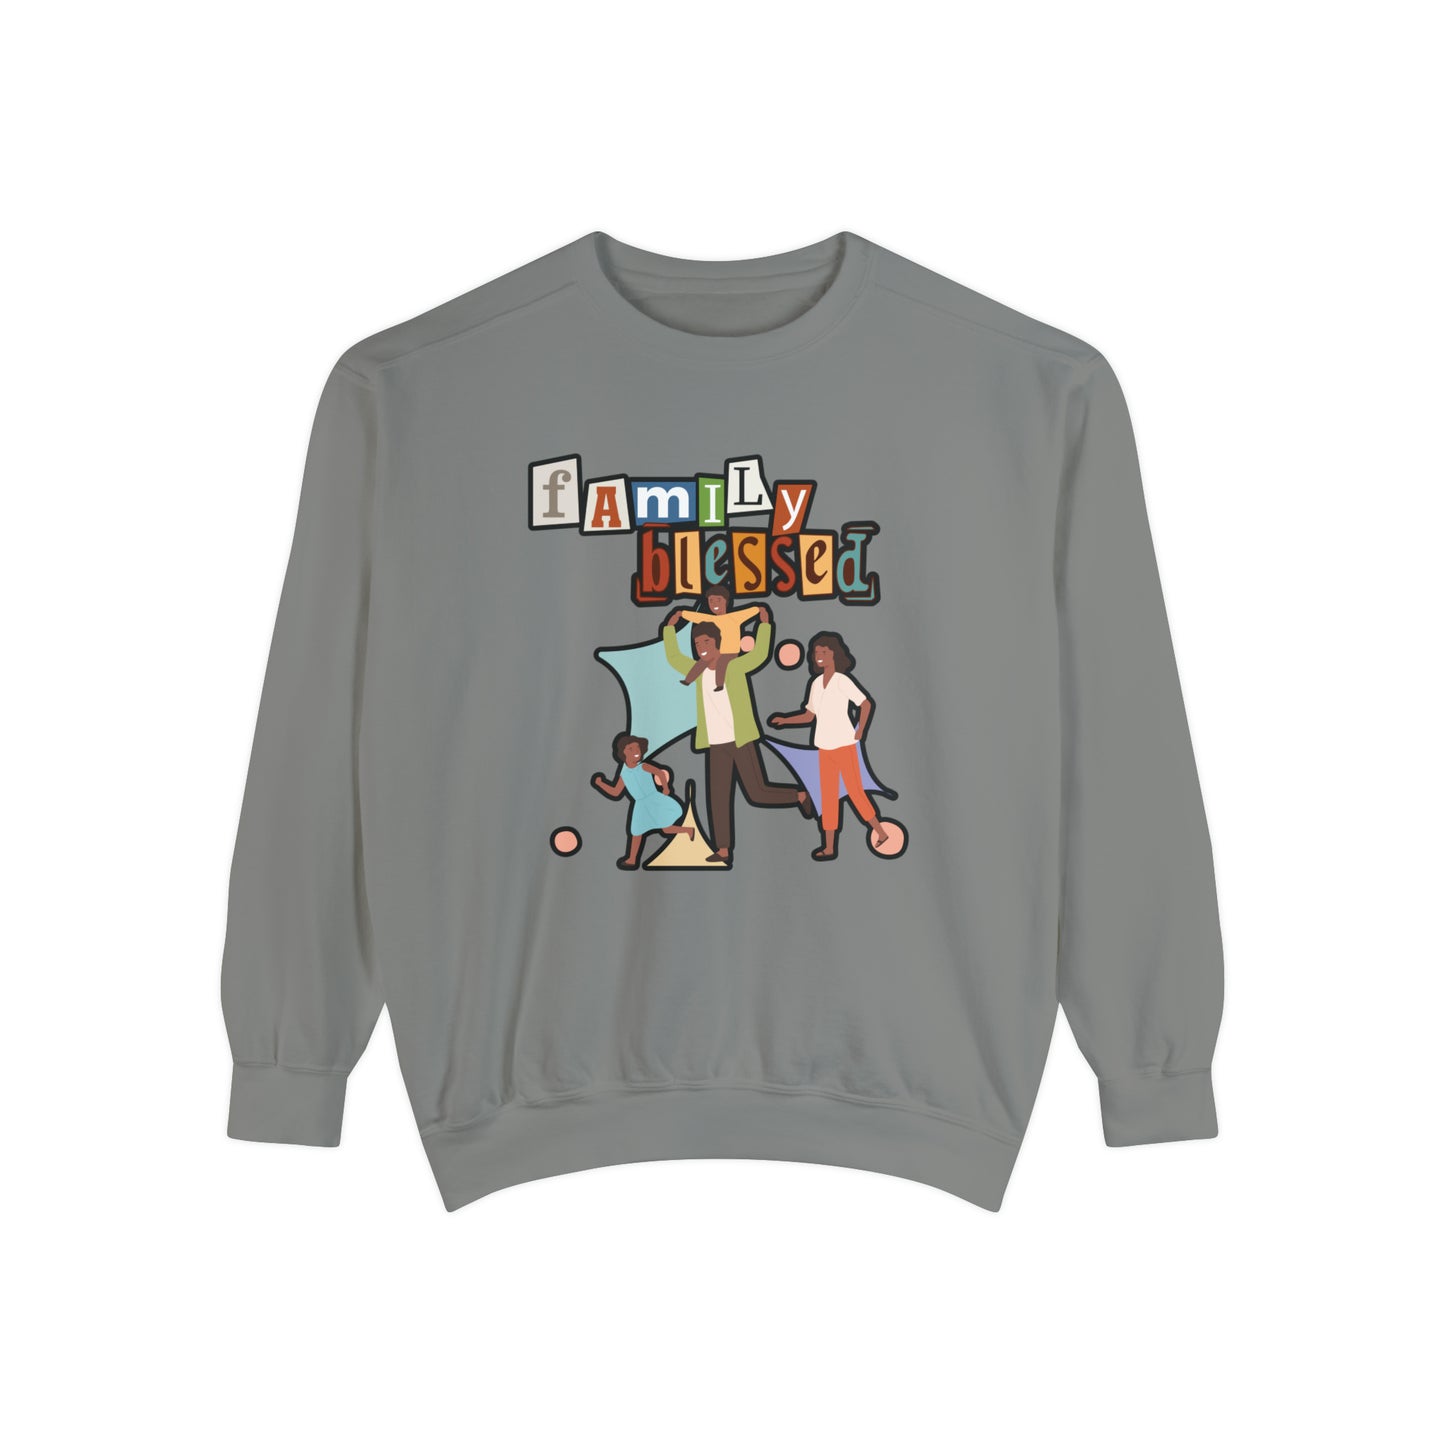 Celebrate Family Unity: Blessed Family Unisex Garment-Dyed Sweatshirt